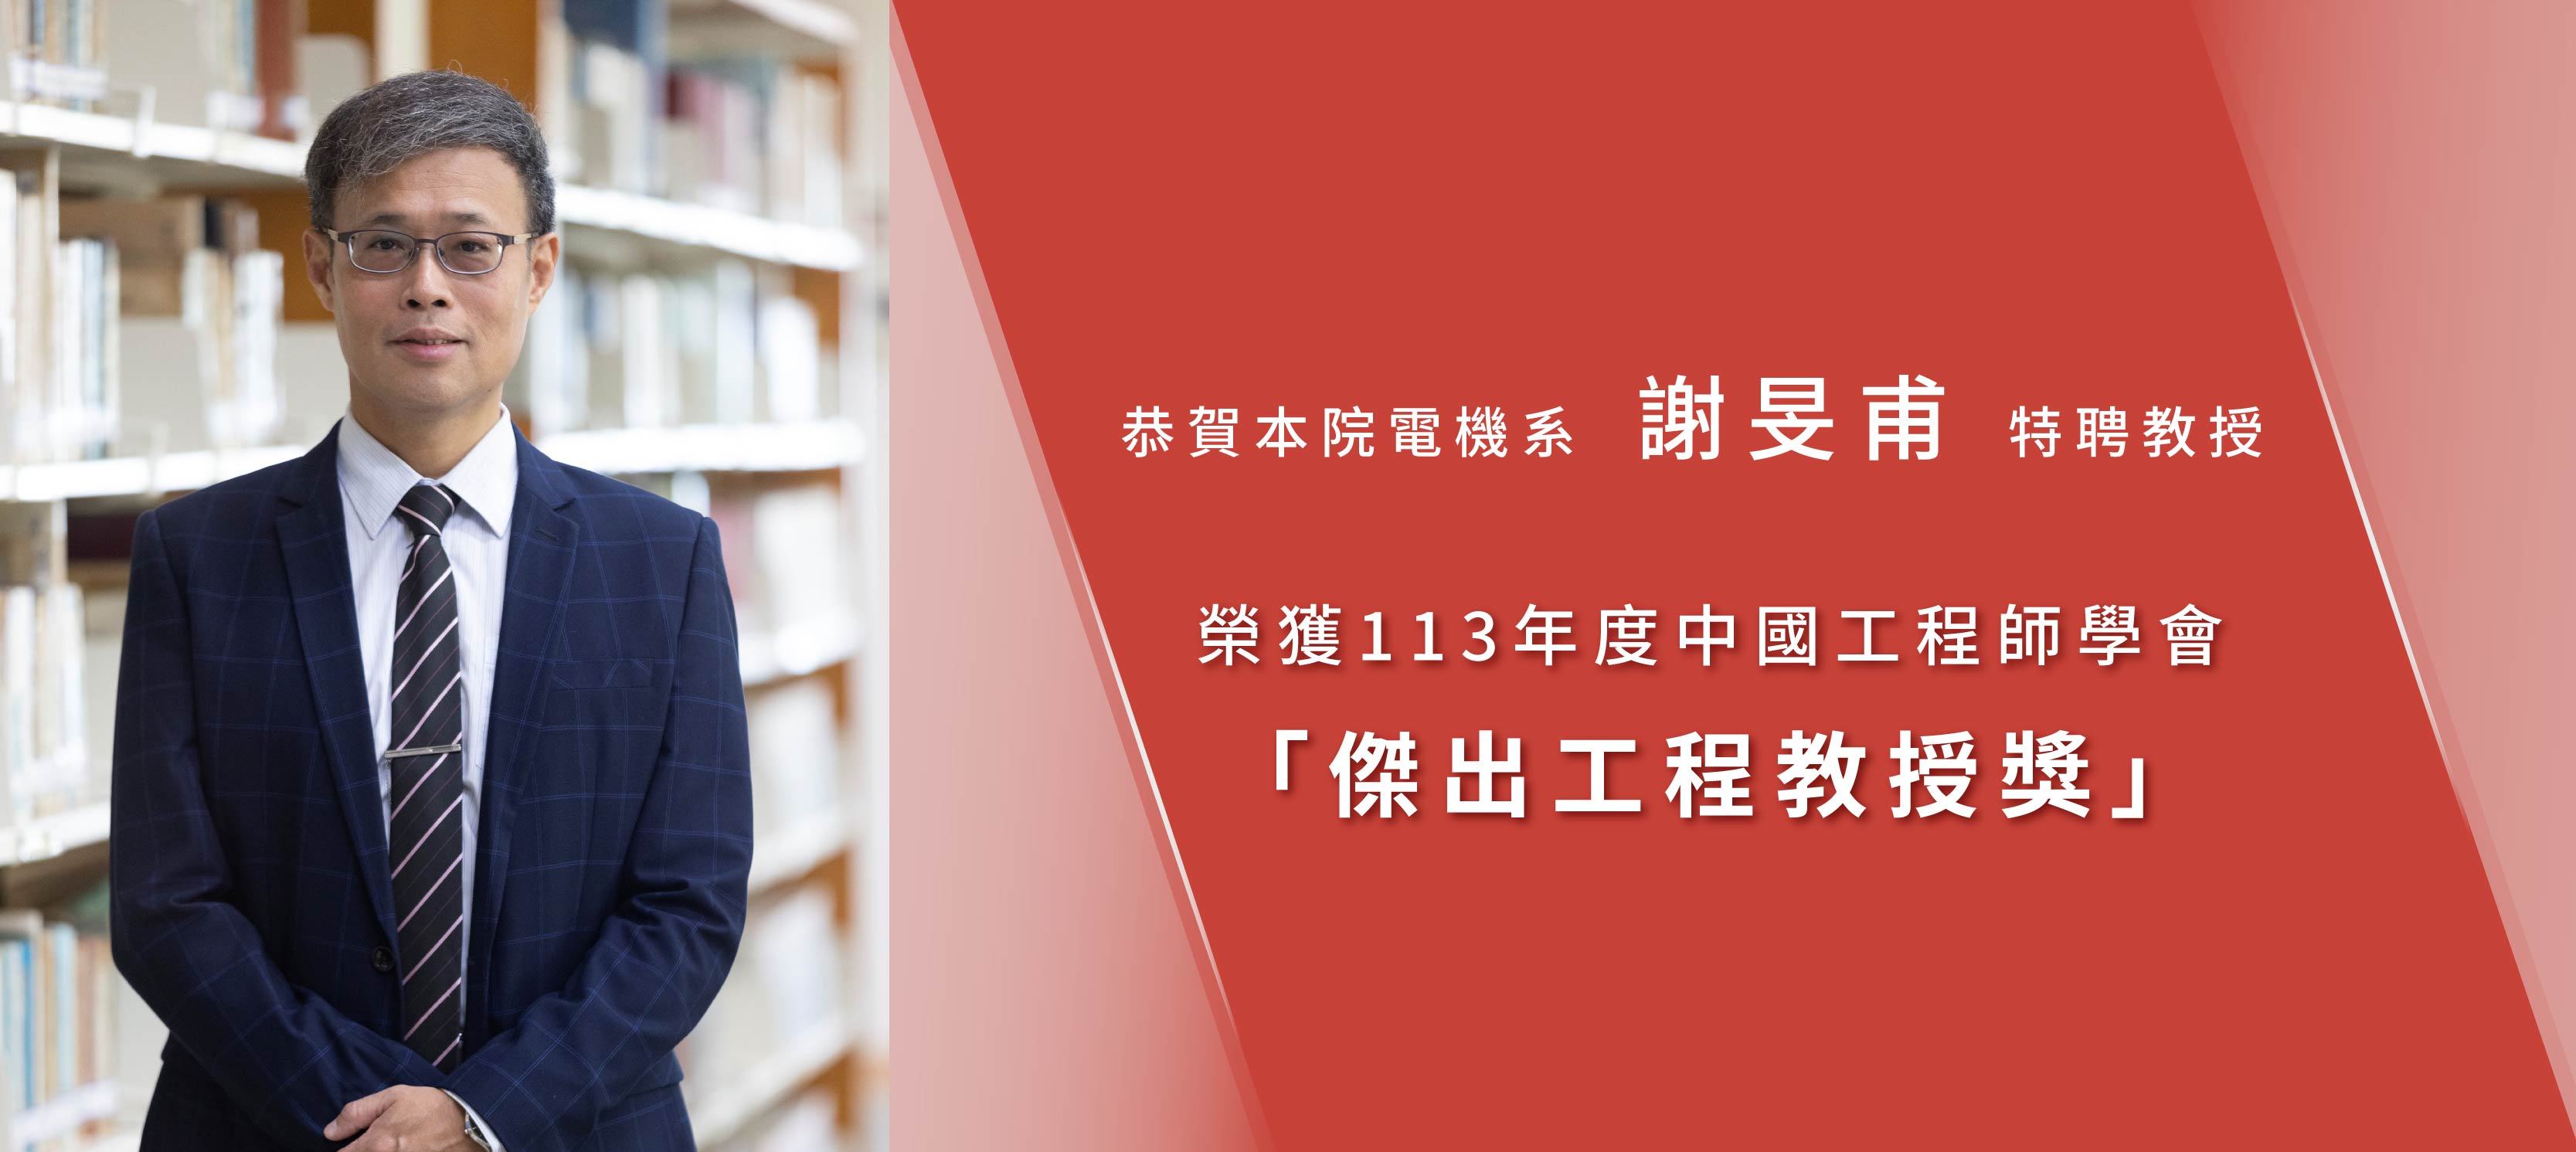 恭賀本院電機系謝旻甫特聘教授榮獲113年度中國工程師學會「傑出工程教授獎」